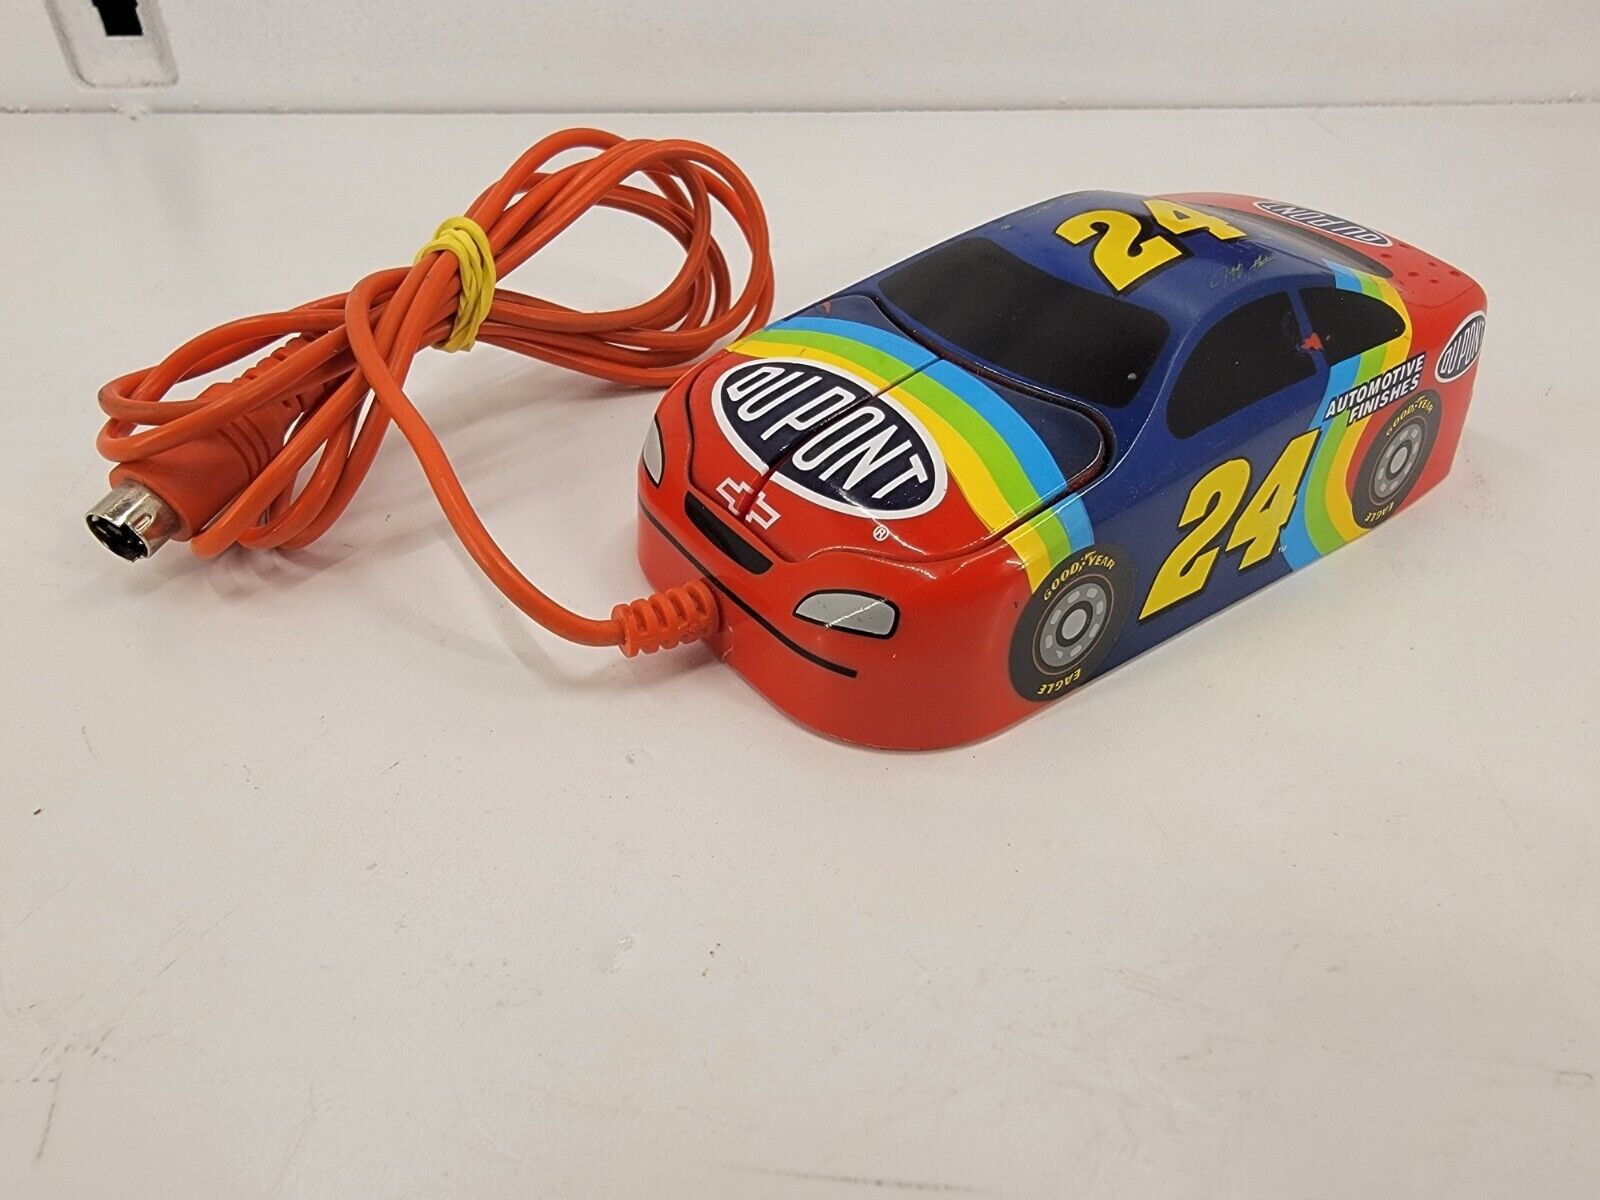 HiRev 9N1 Jeff Gordon 24 NASCAR PS/2 Vintage Computer Mouse- TESTED WORKS